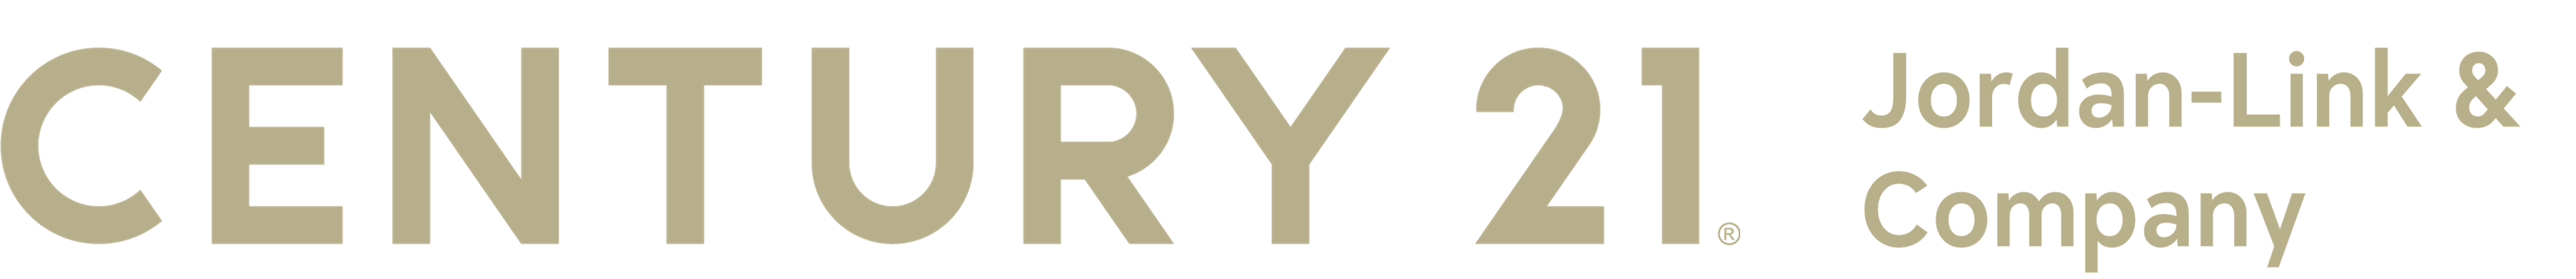 image of century 21 jordan link gold logo